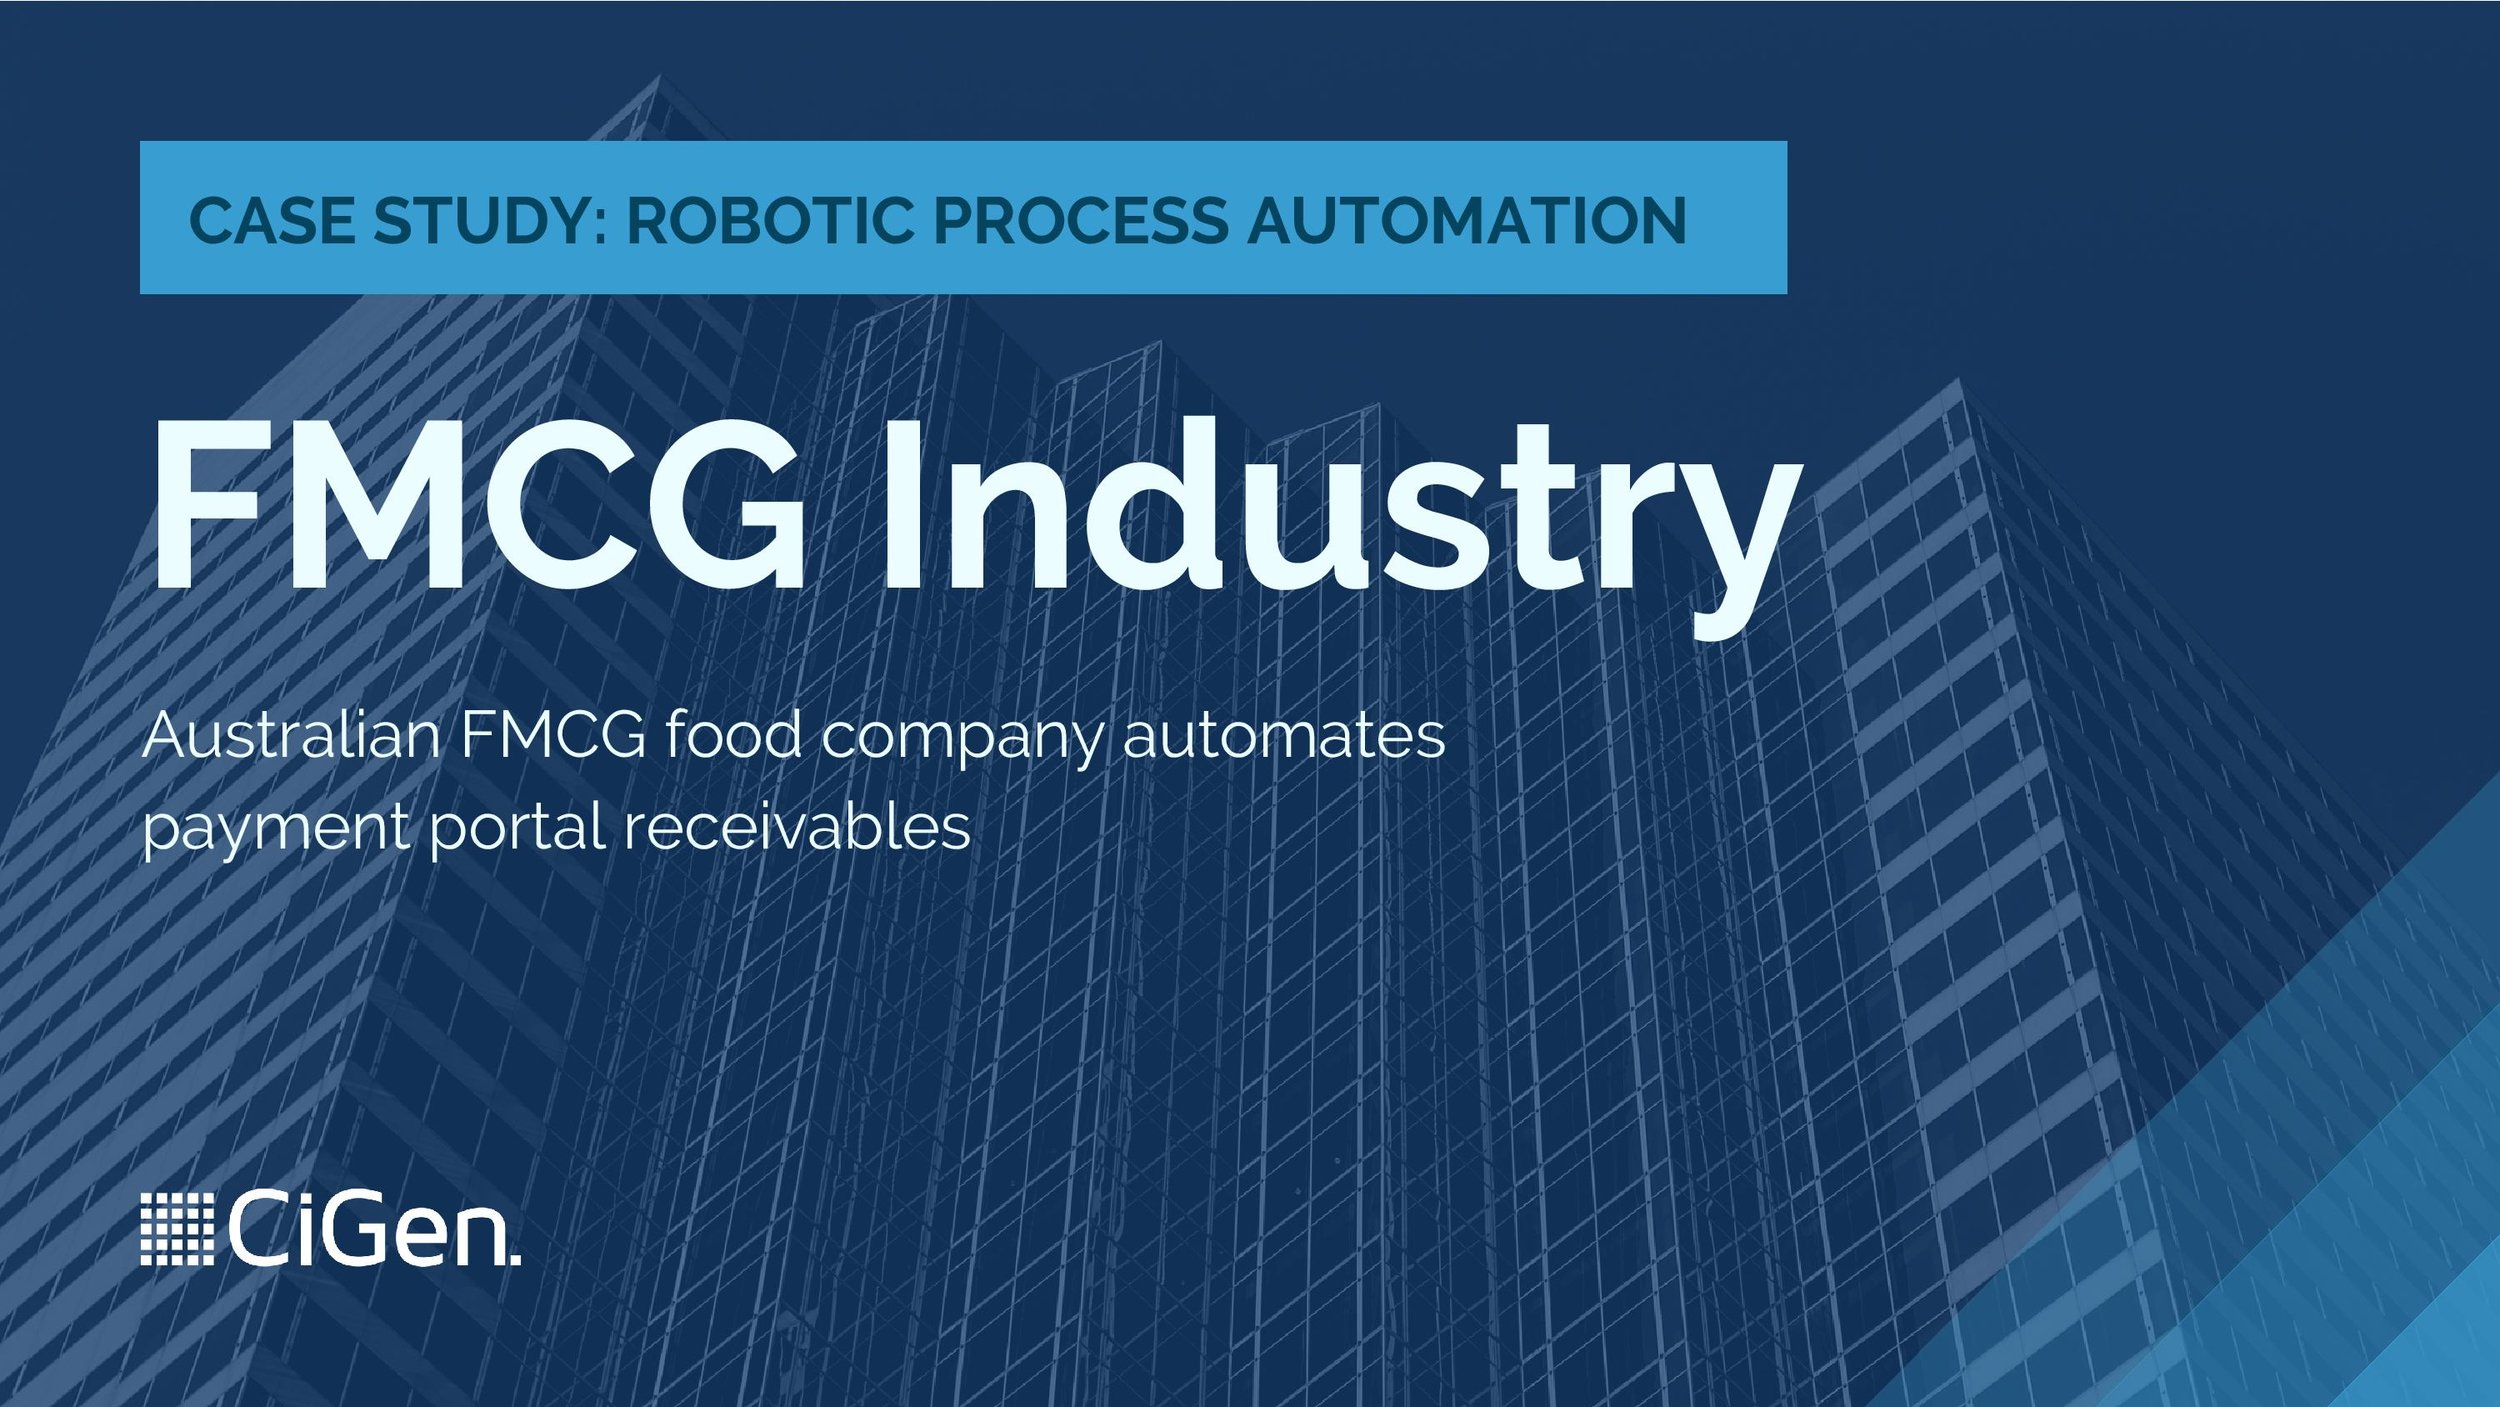 CiGen-robotic-process-automation-RPA-Australia-case-study-FMCG-food-company-automates-payment-portal-receivables-page-001.jpg